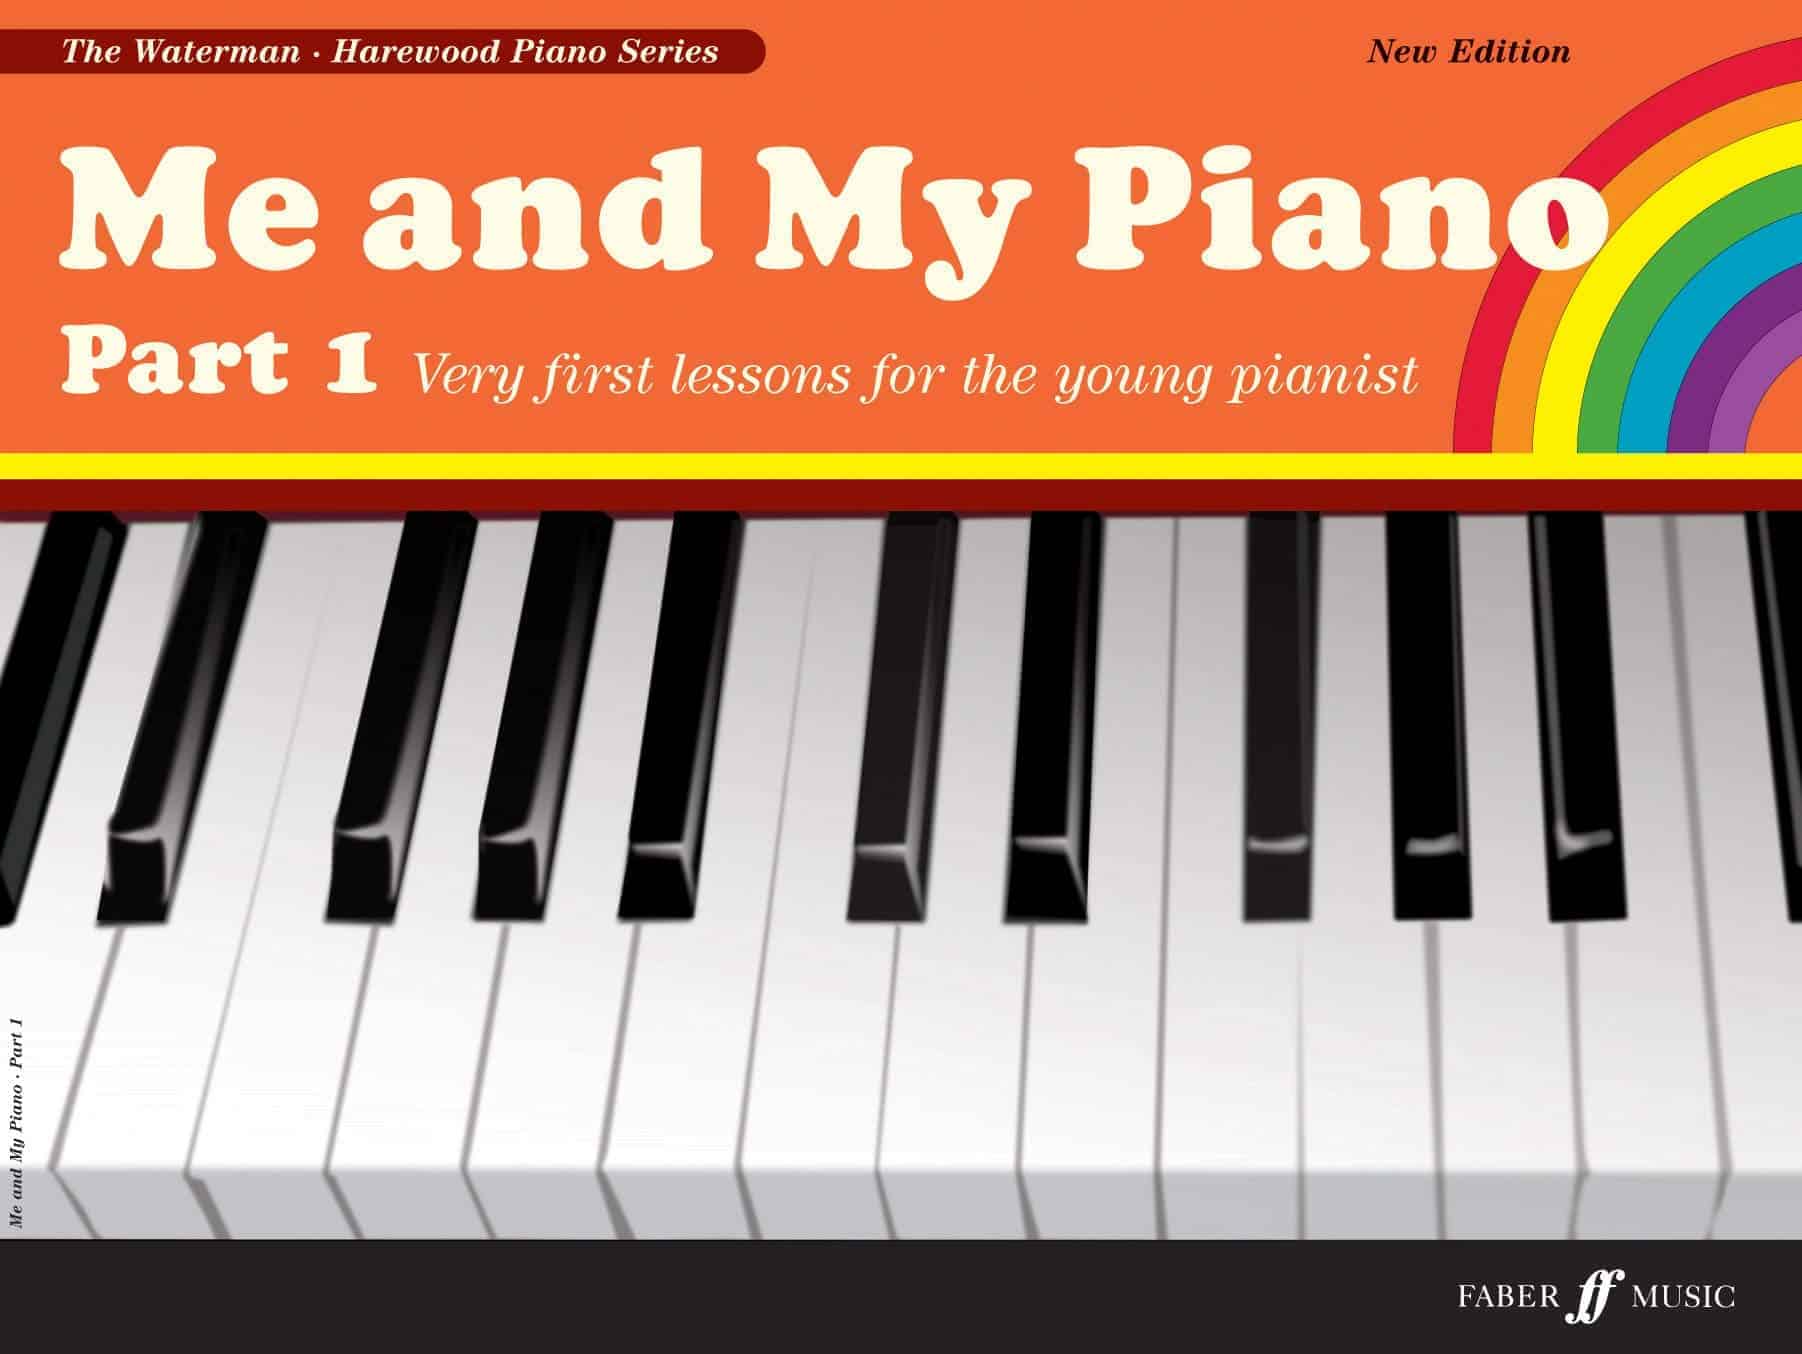 z-ruka-ext-zy-ko-a-best-piano-books-for-beginners-rozdeli-lingvistika